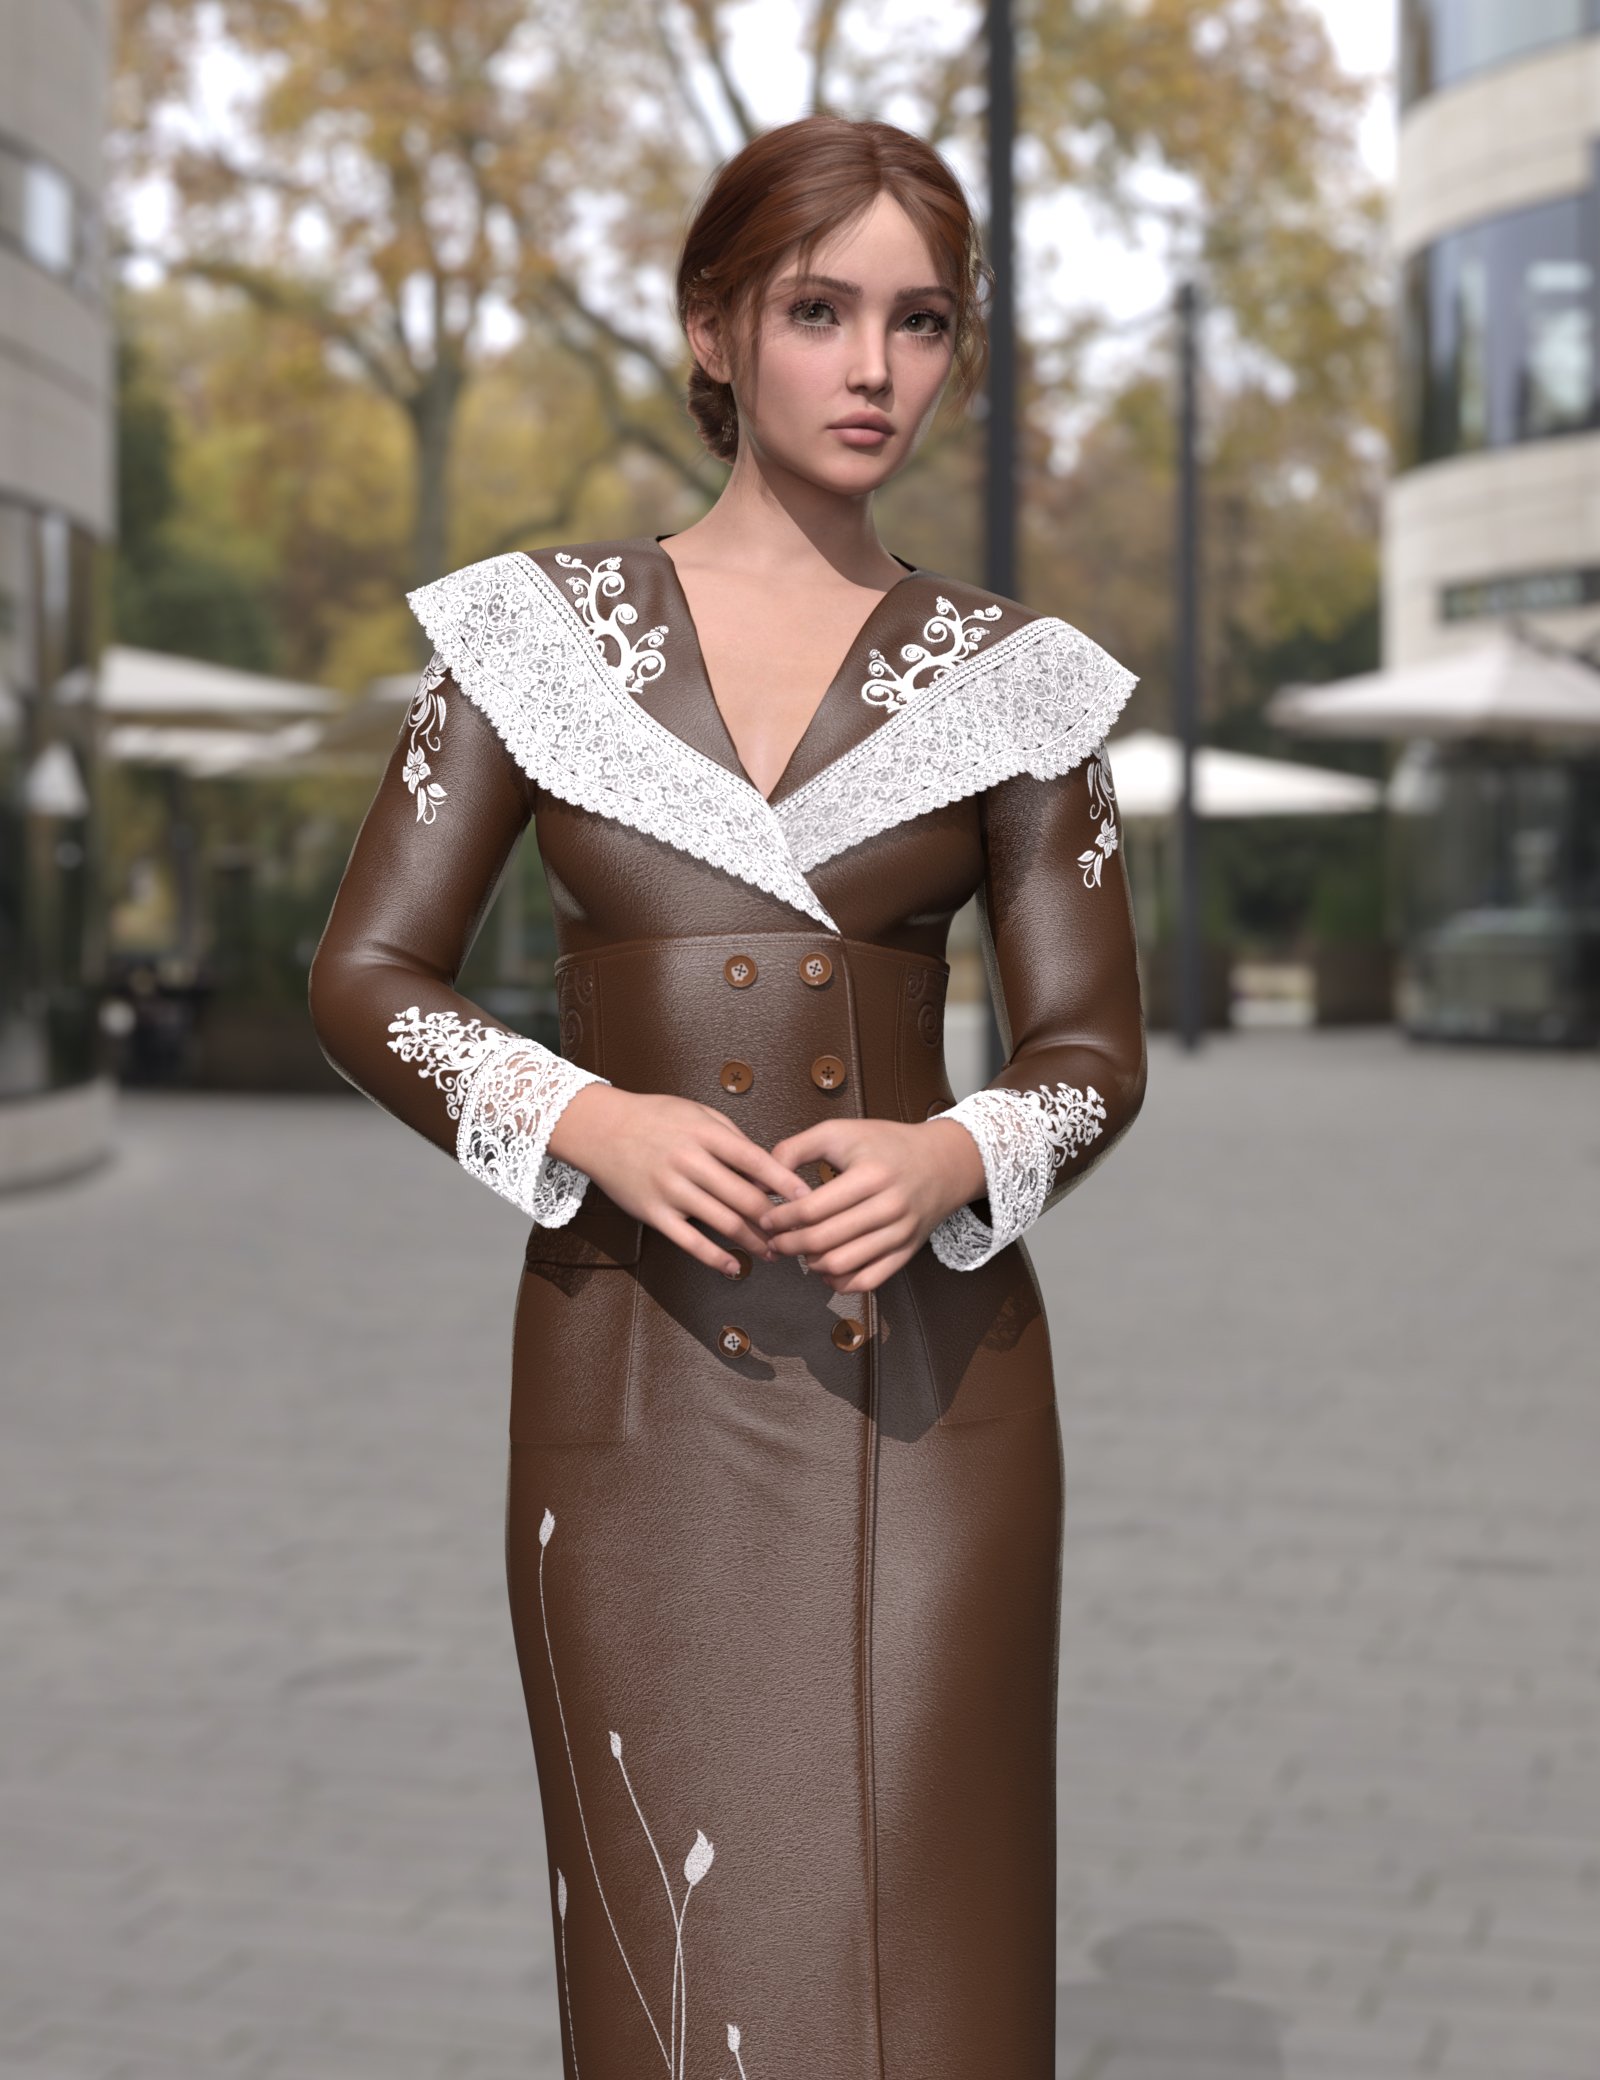 dForce MK Lace Leather Dress for Genesis 9 by: wsmonkeyking, 3D Models by Daz 3D